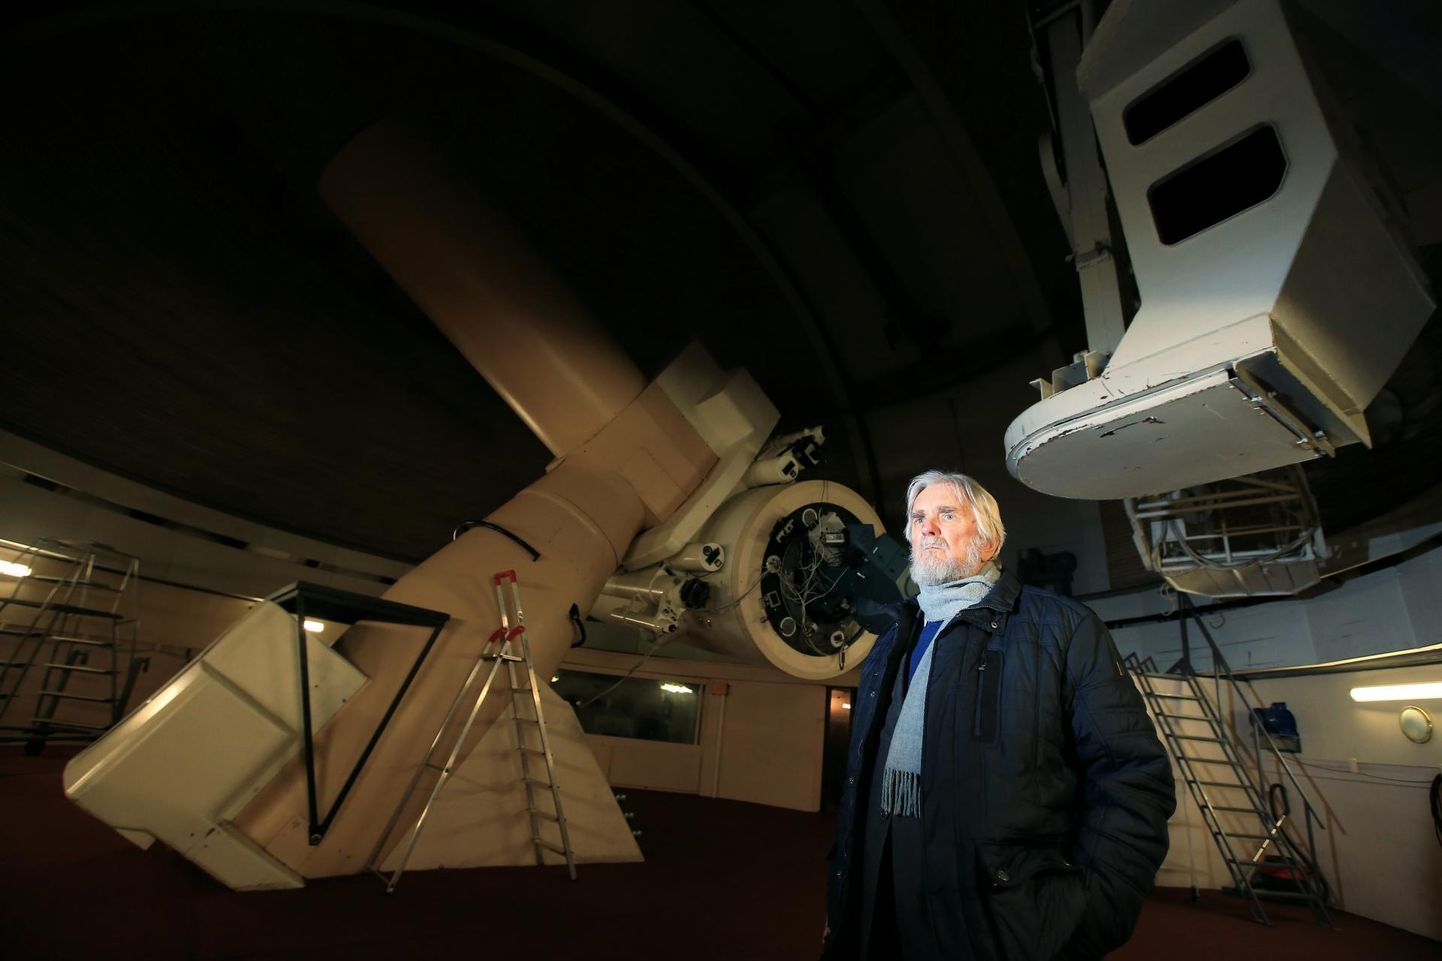 Suur Tõravere teleskoop: Tõnu Viik oma astronoomiametis teleskoobivaatlusi eriti teinud polegi.